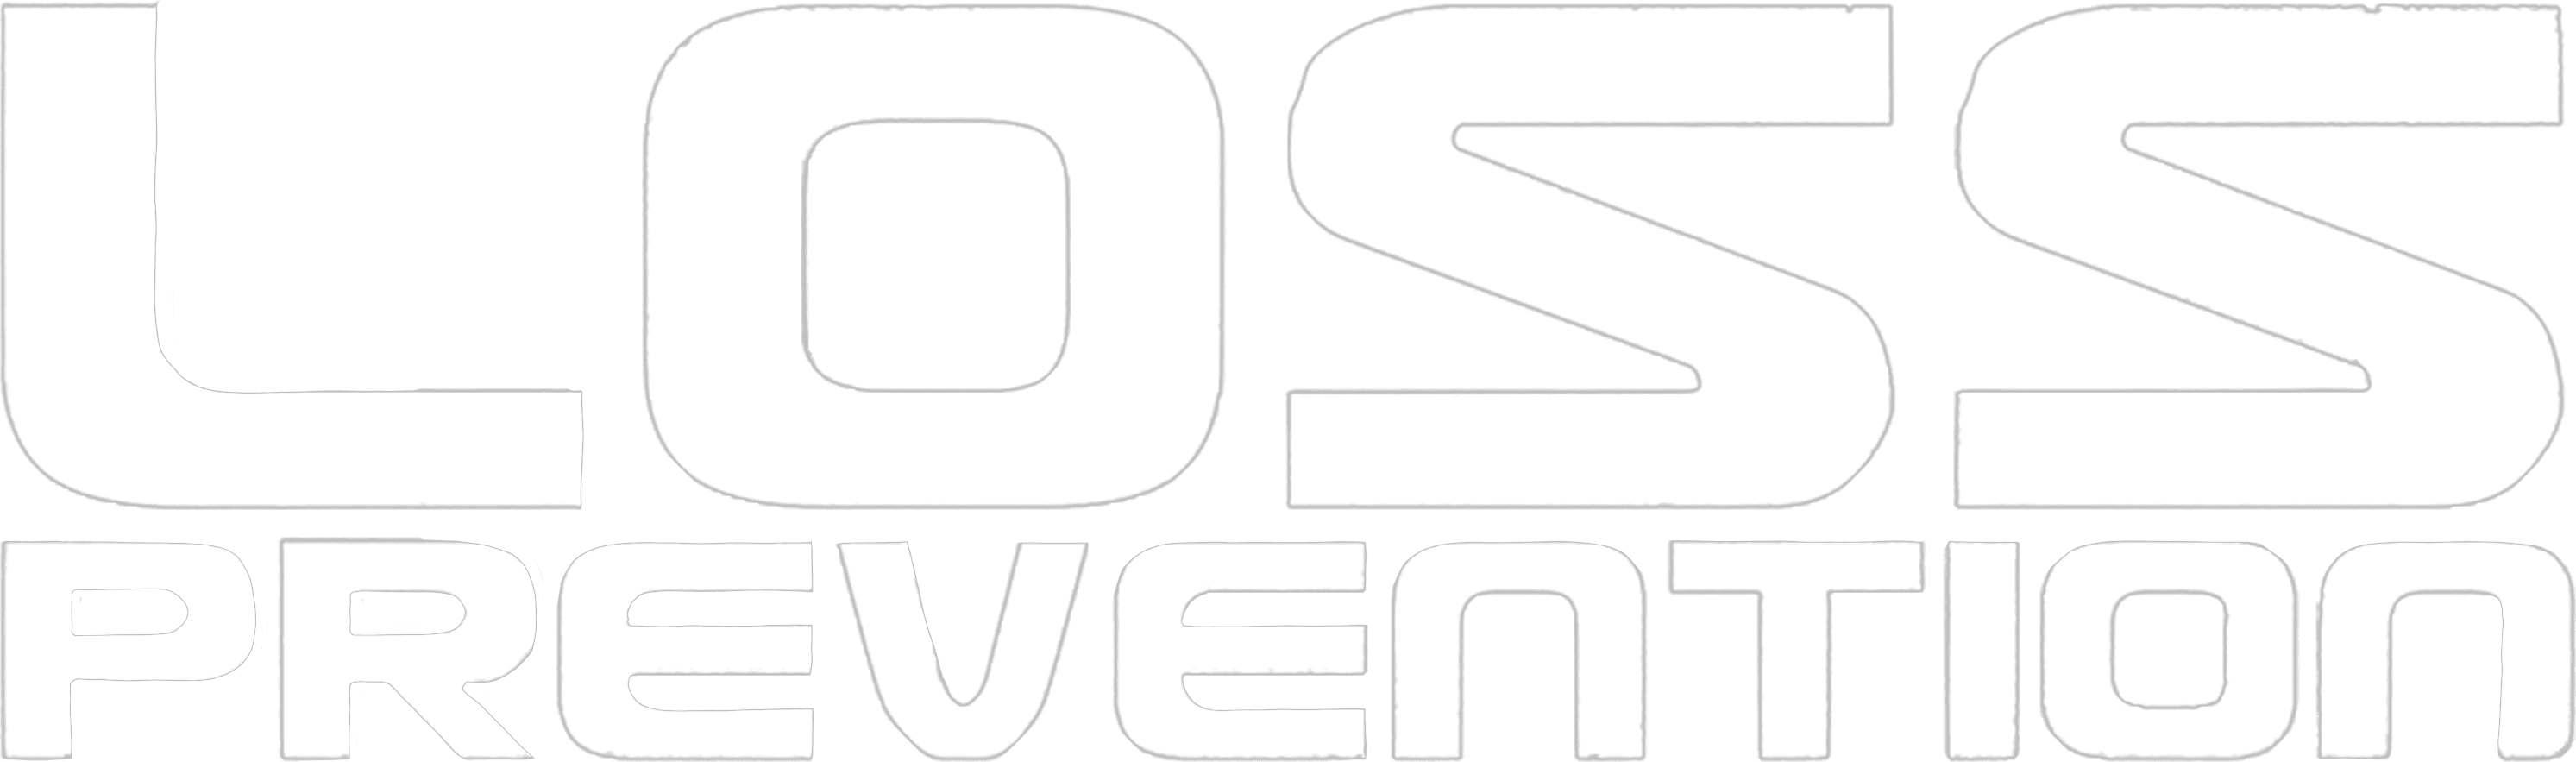 Loss Prevention logo